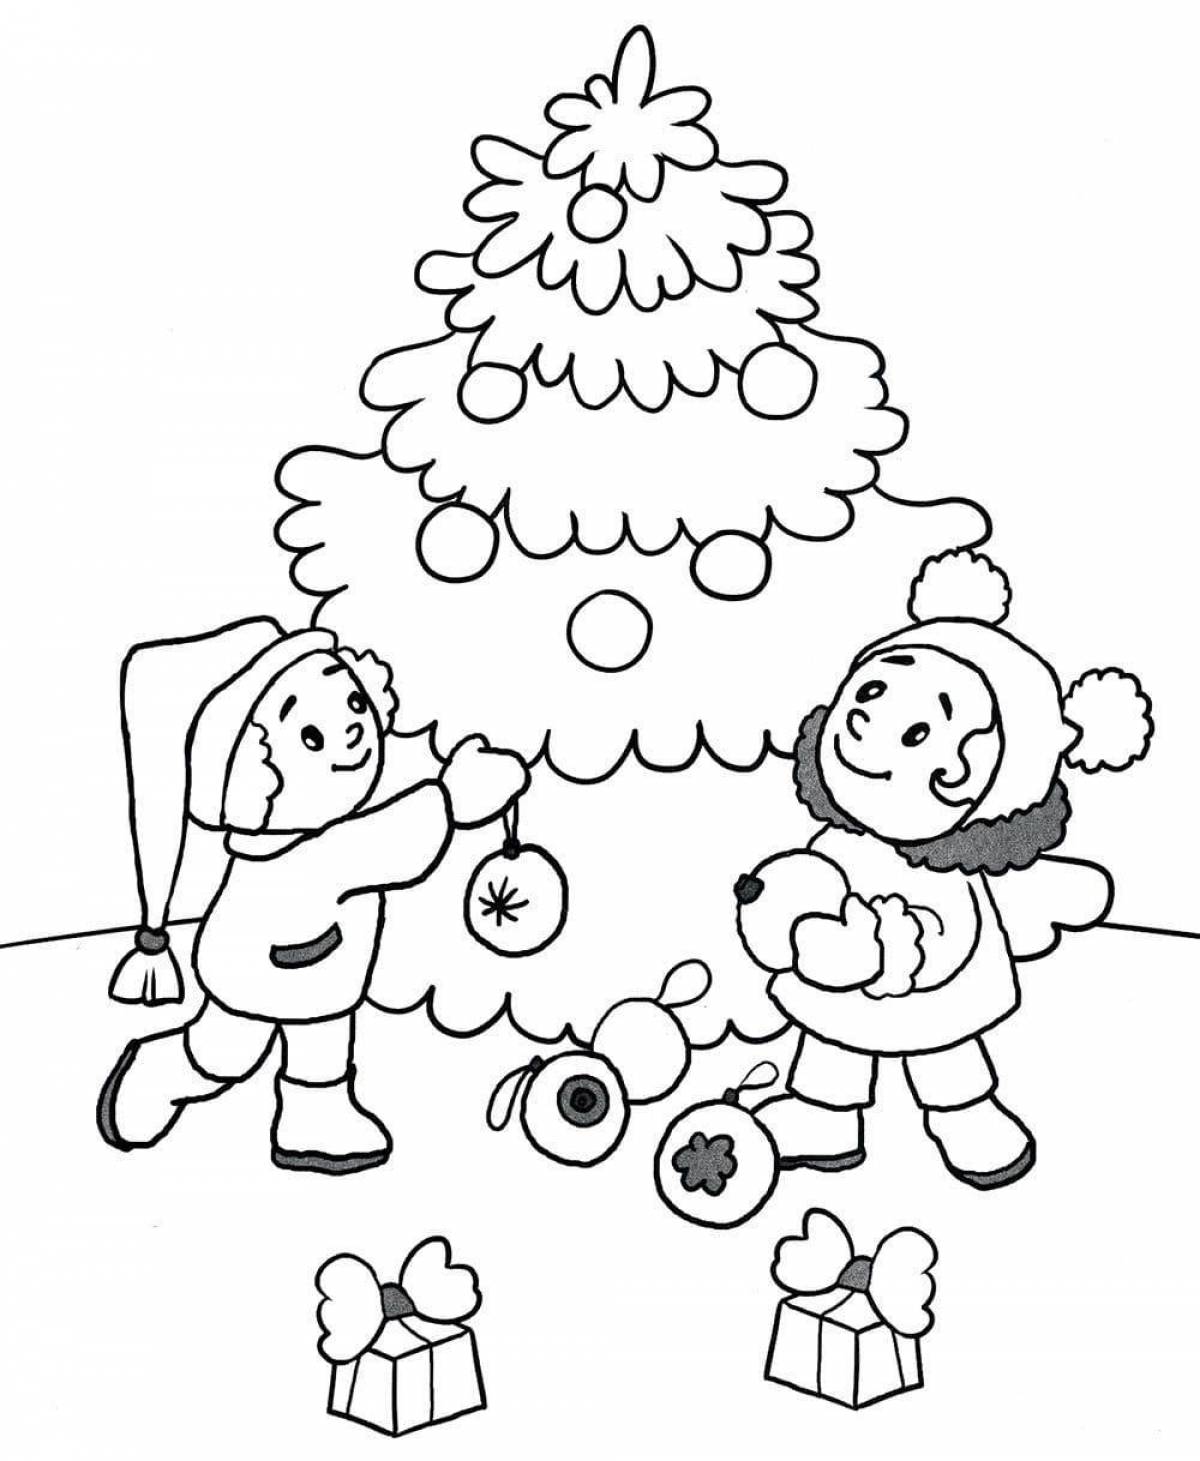 Увлекательная раскраска зима для детей 5-6 лет